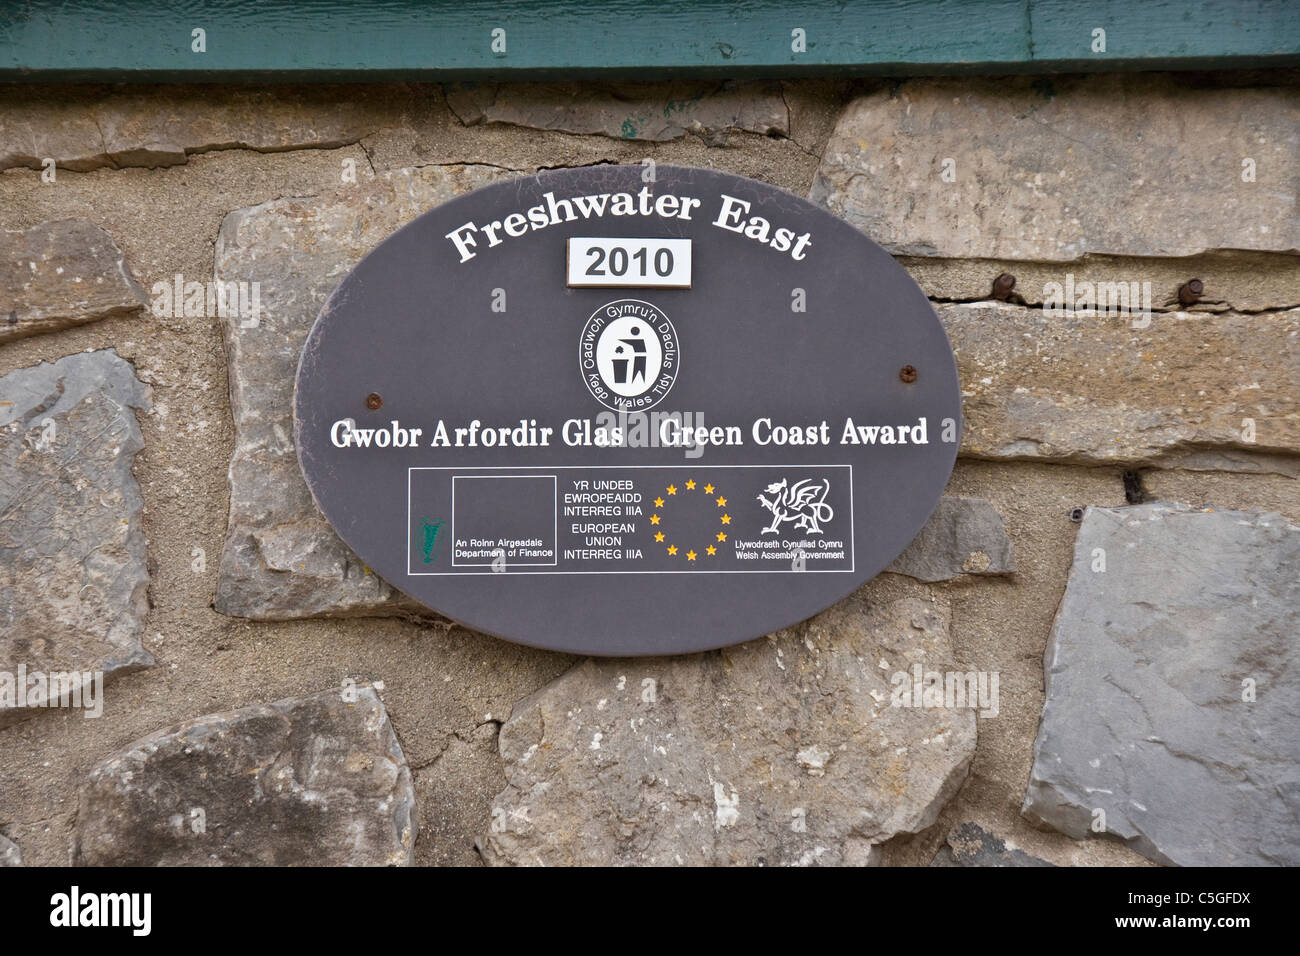 Plage de Freshwater East Pembrokeshire. Côte Verte plaque commémorative. Banque D'Images